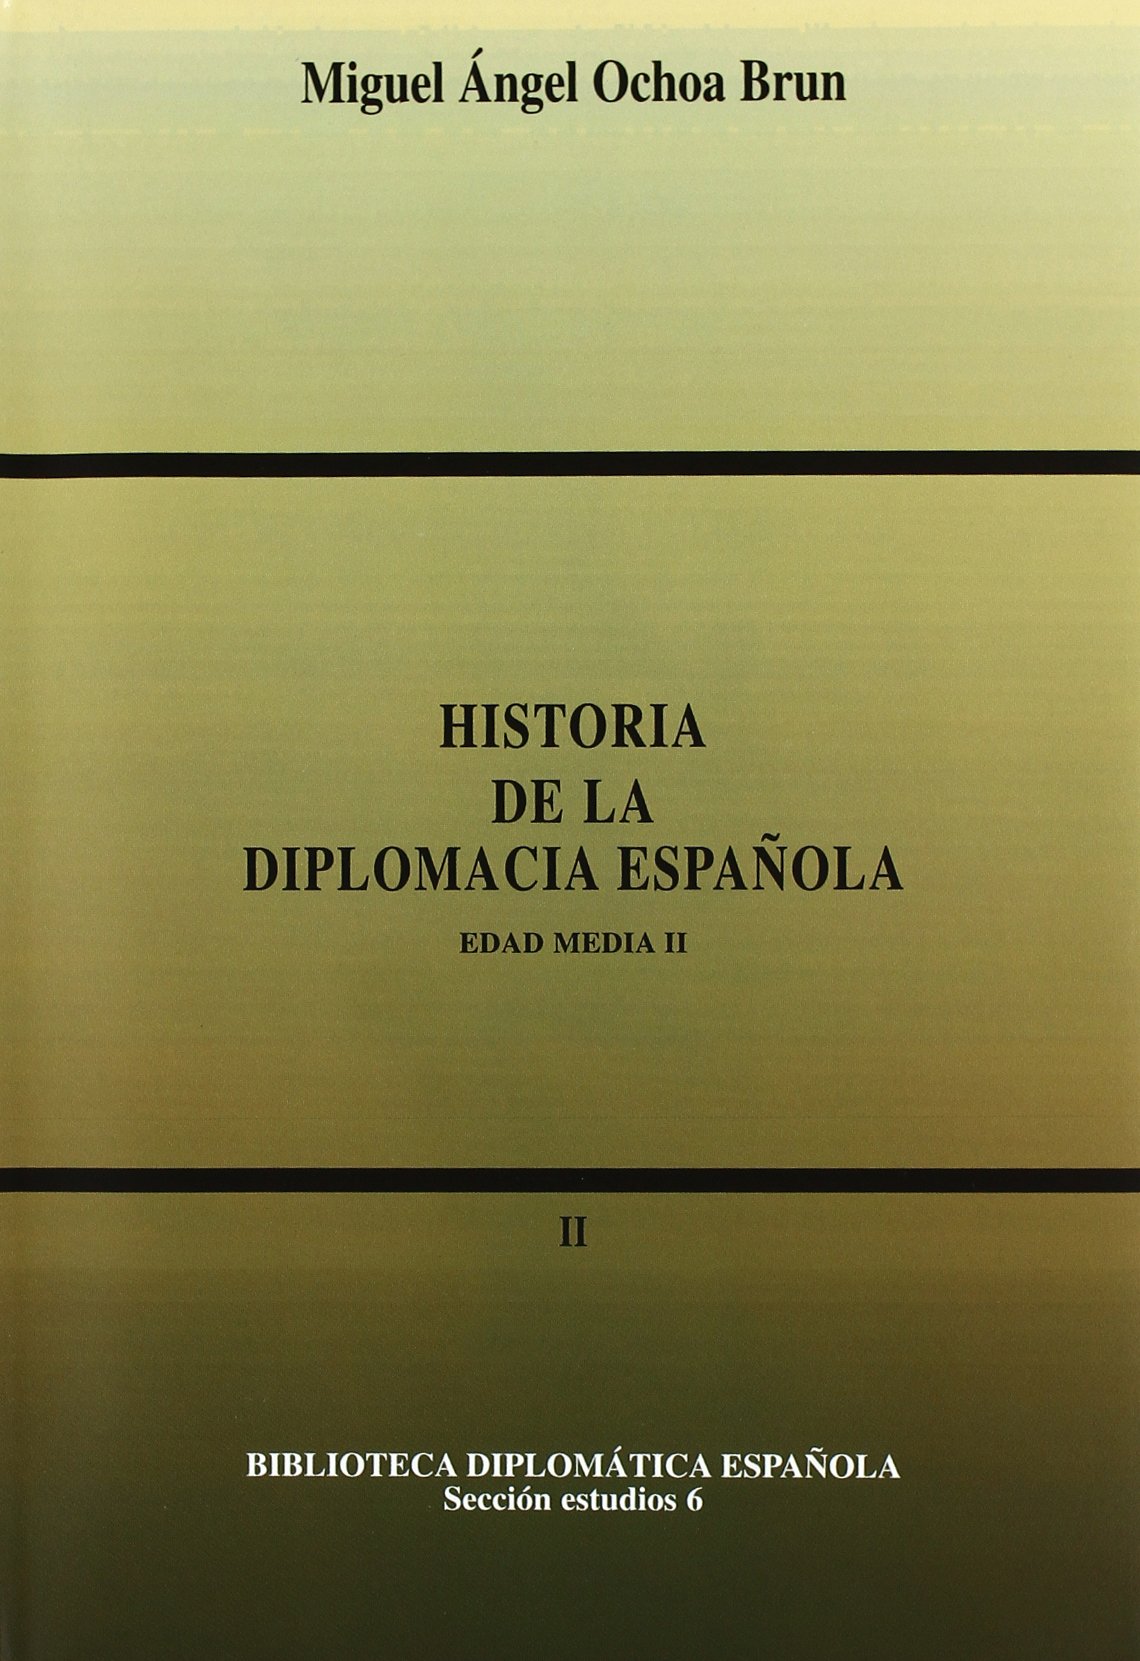 Historia de la diplomacia española